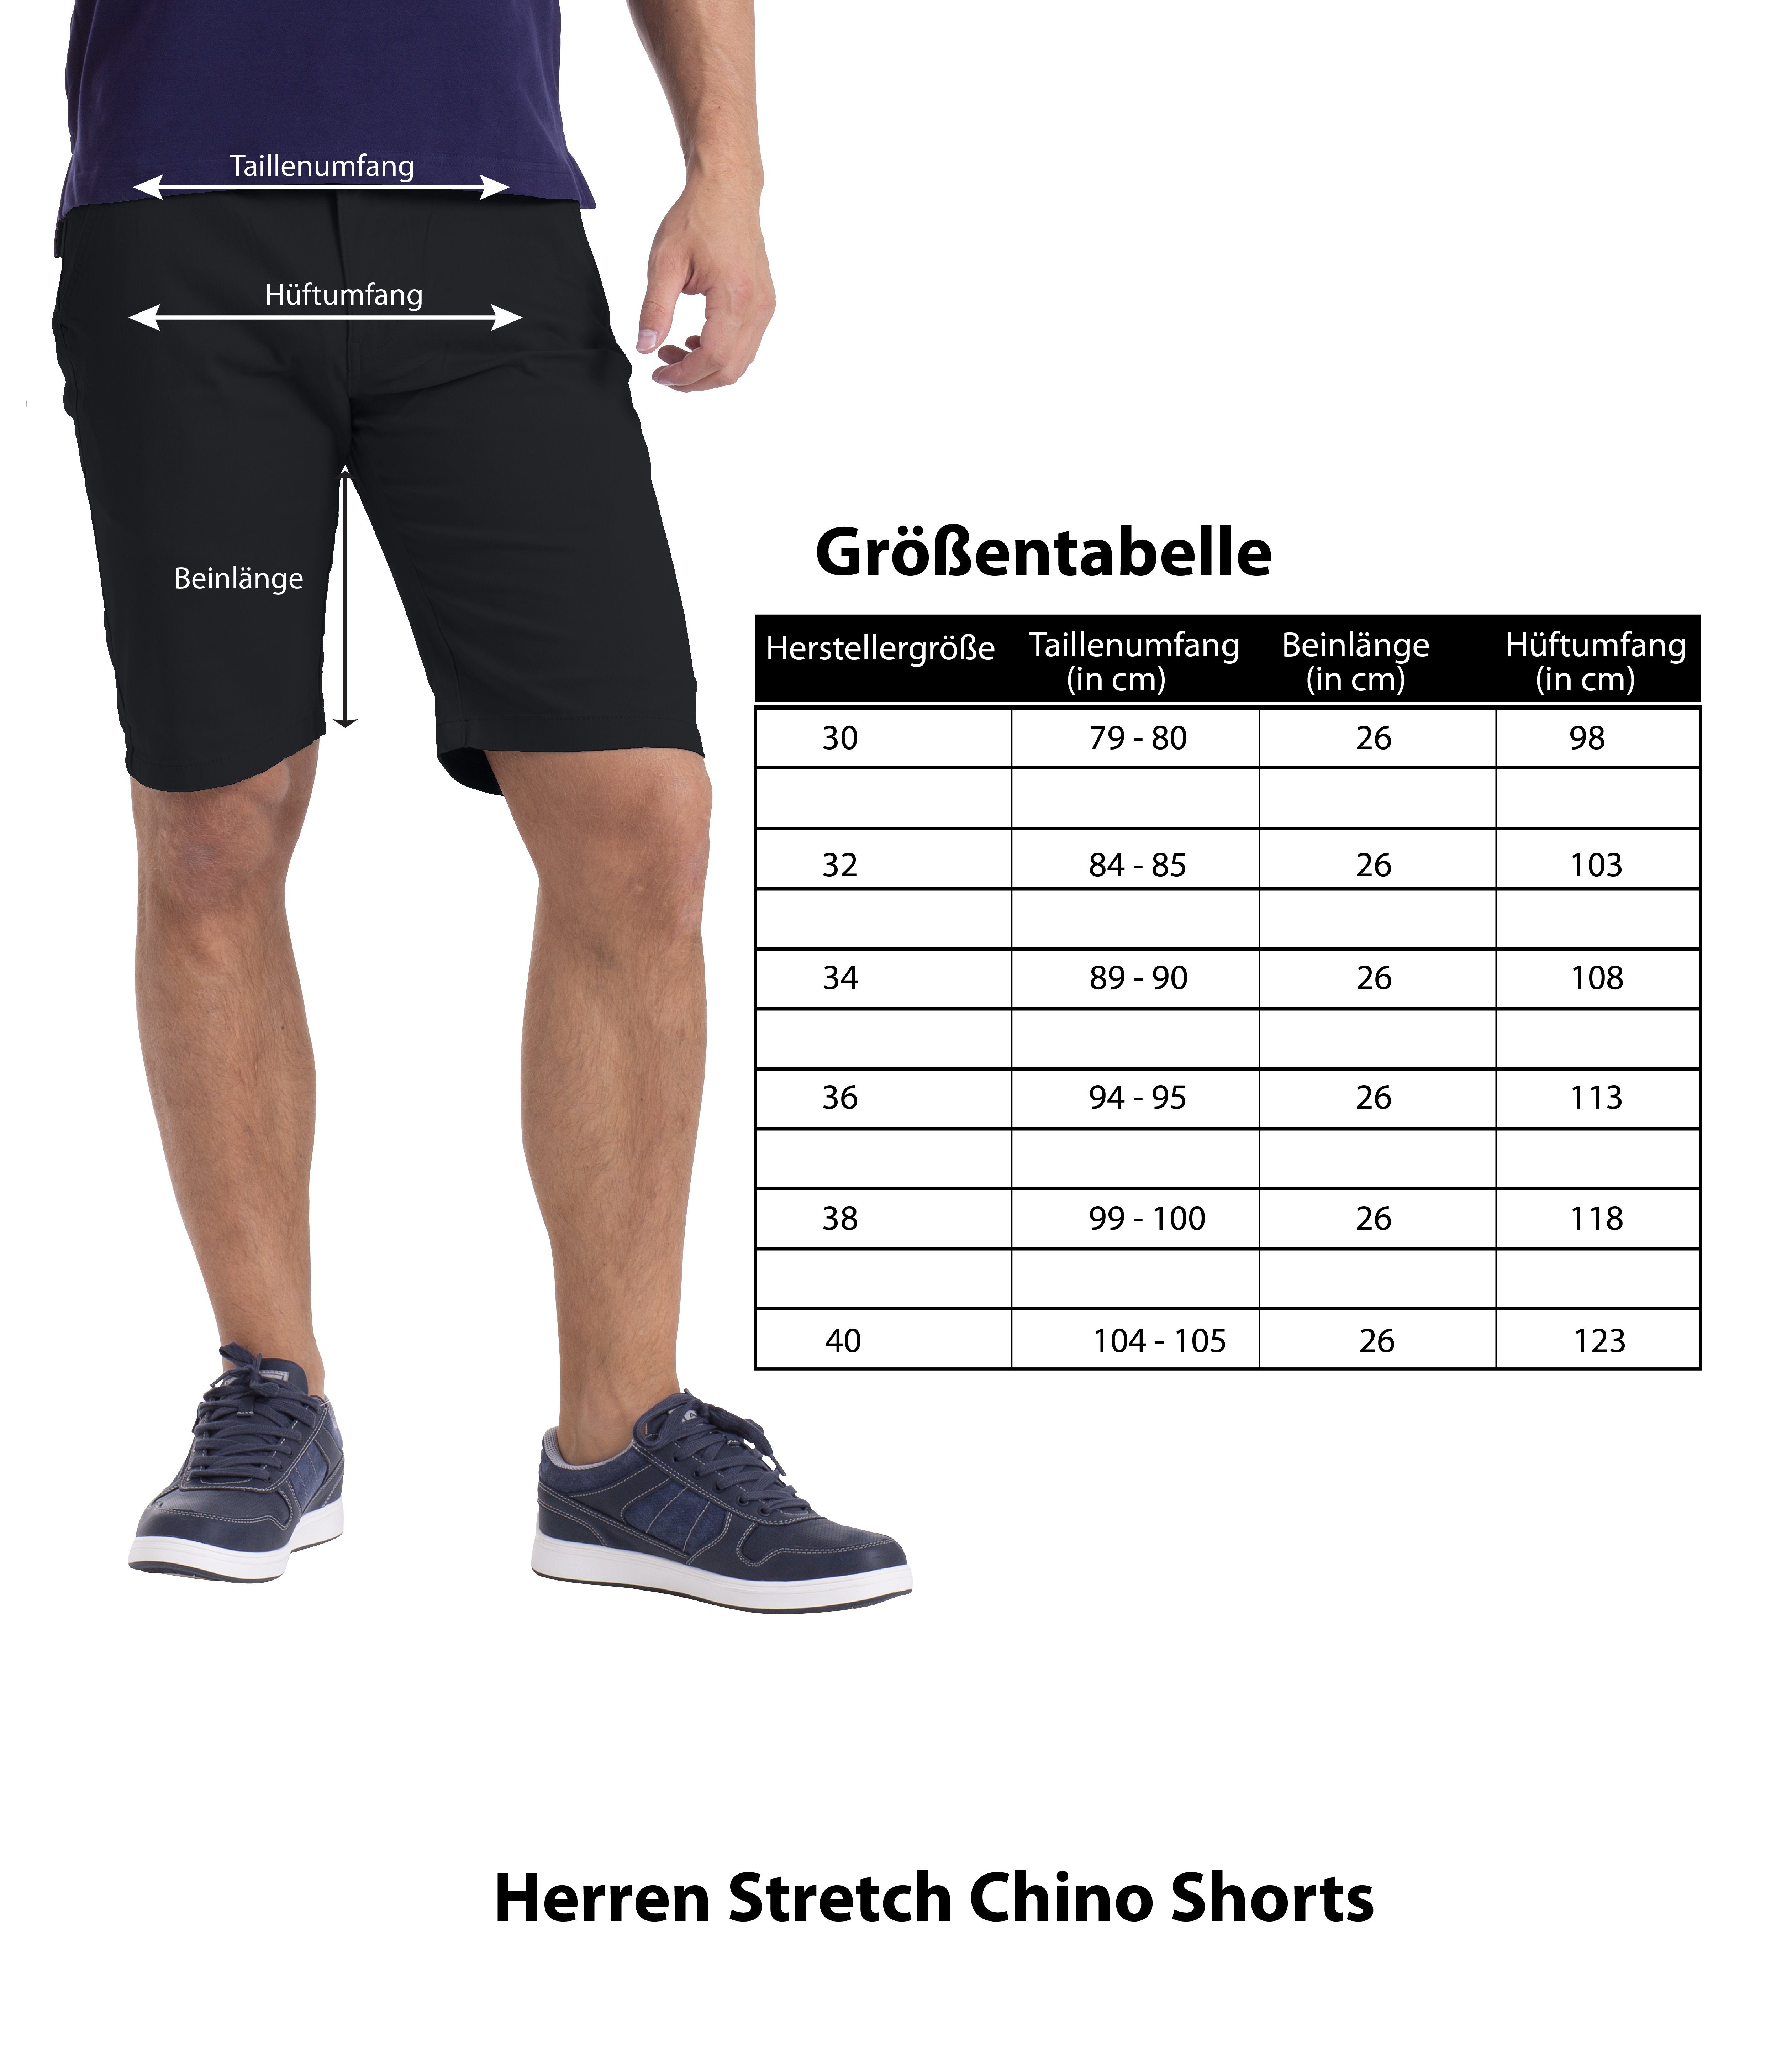 Bermuda Schwarz Herren Slim Hose Shorts Chino Stretch BlauerHafen Fit Strecken-Baumwolle Chinoshorts